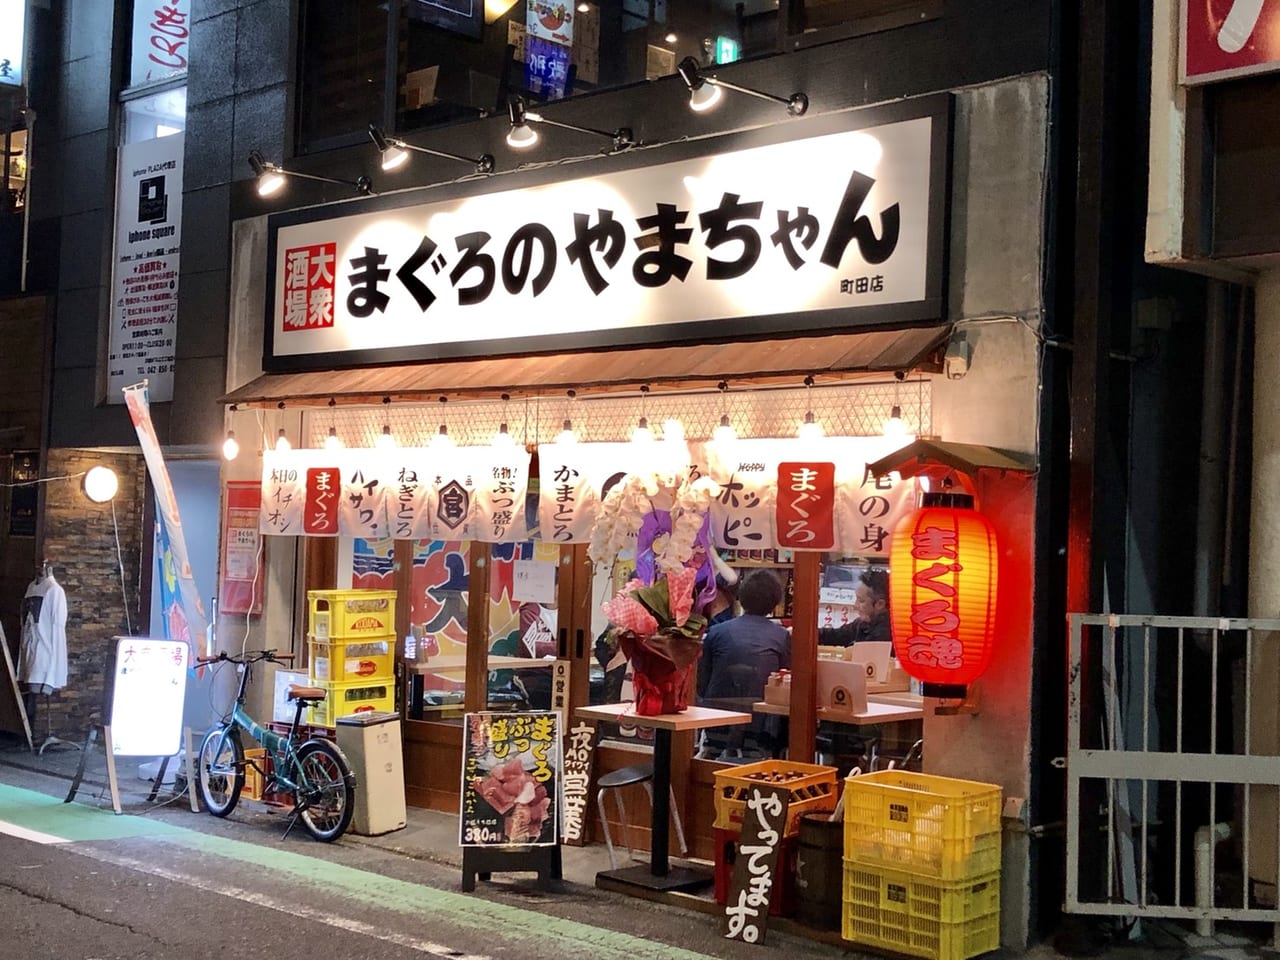 町田市 町田の駅近くに見るからに美味しそうな居酒屋がオープンしていました 皆さんはもう行きましたか 号外net 町田市